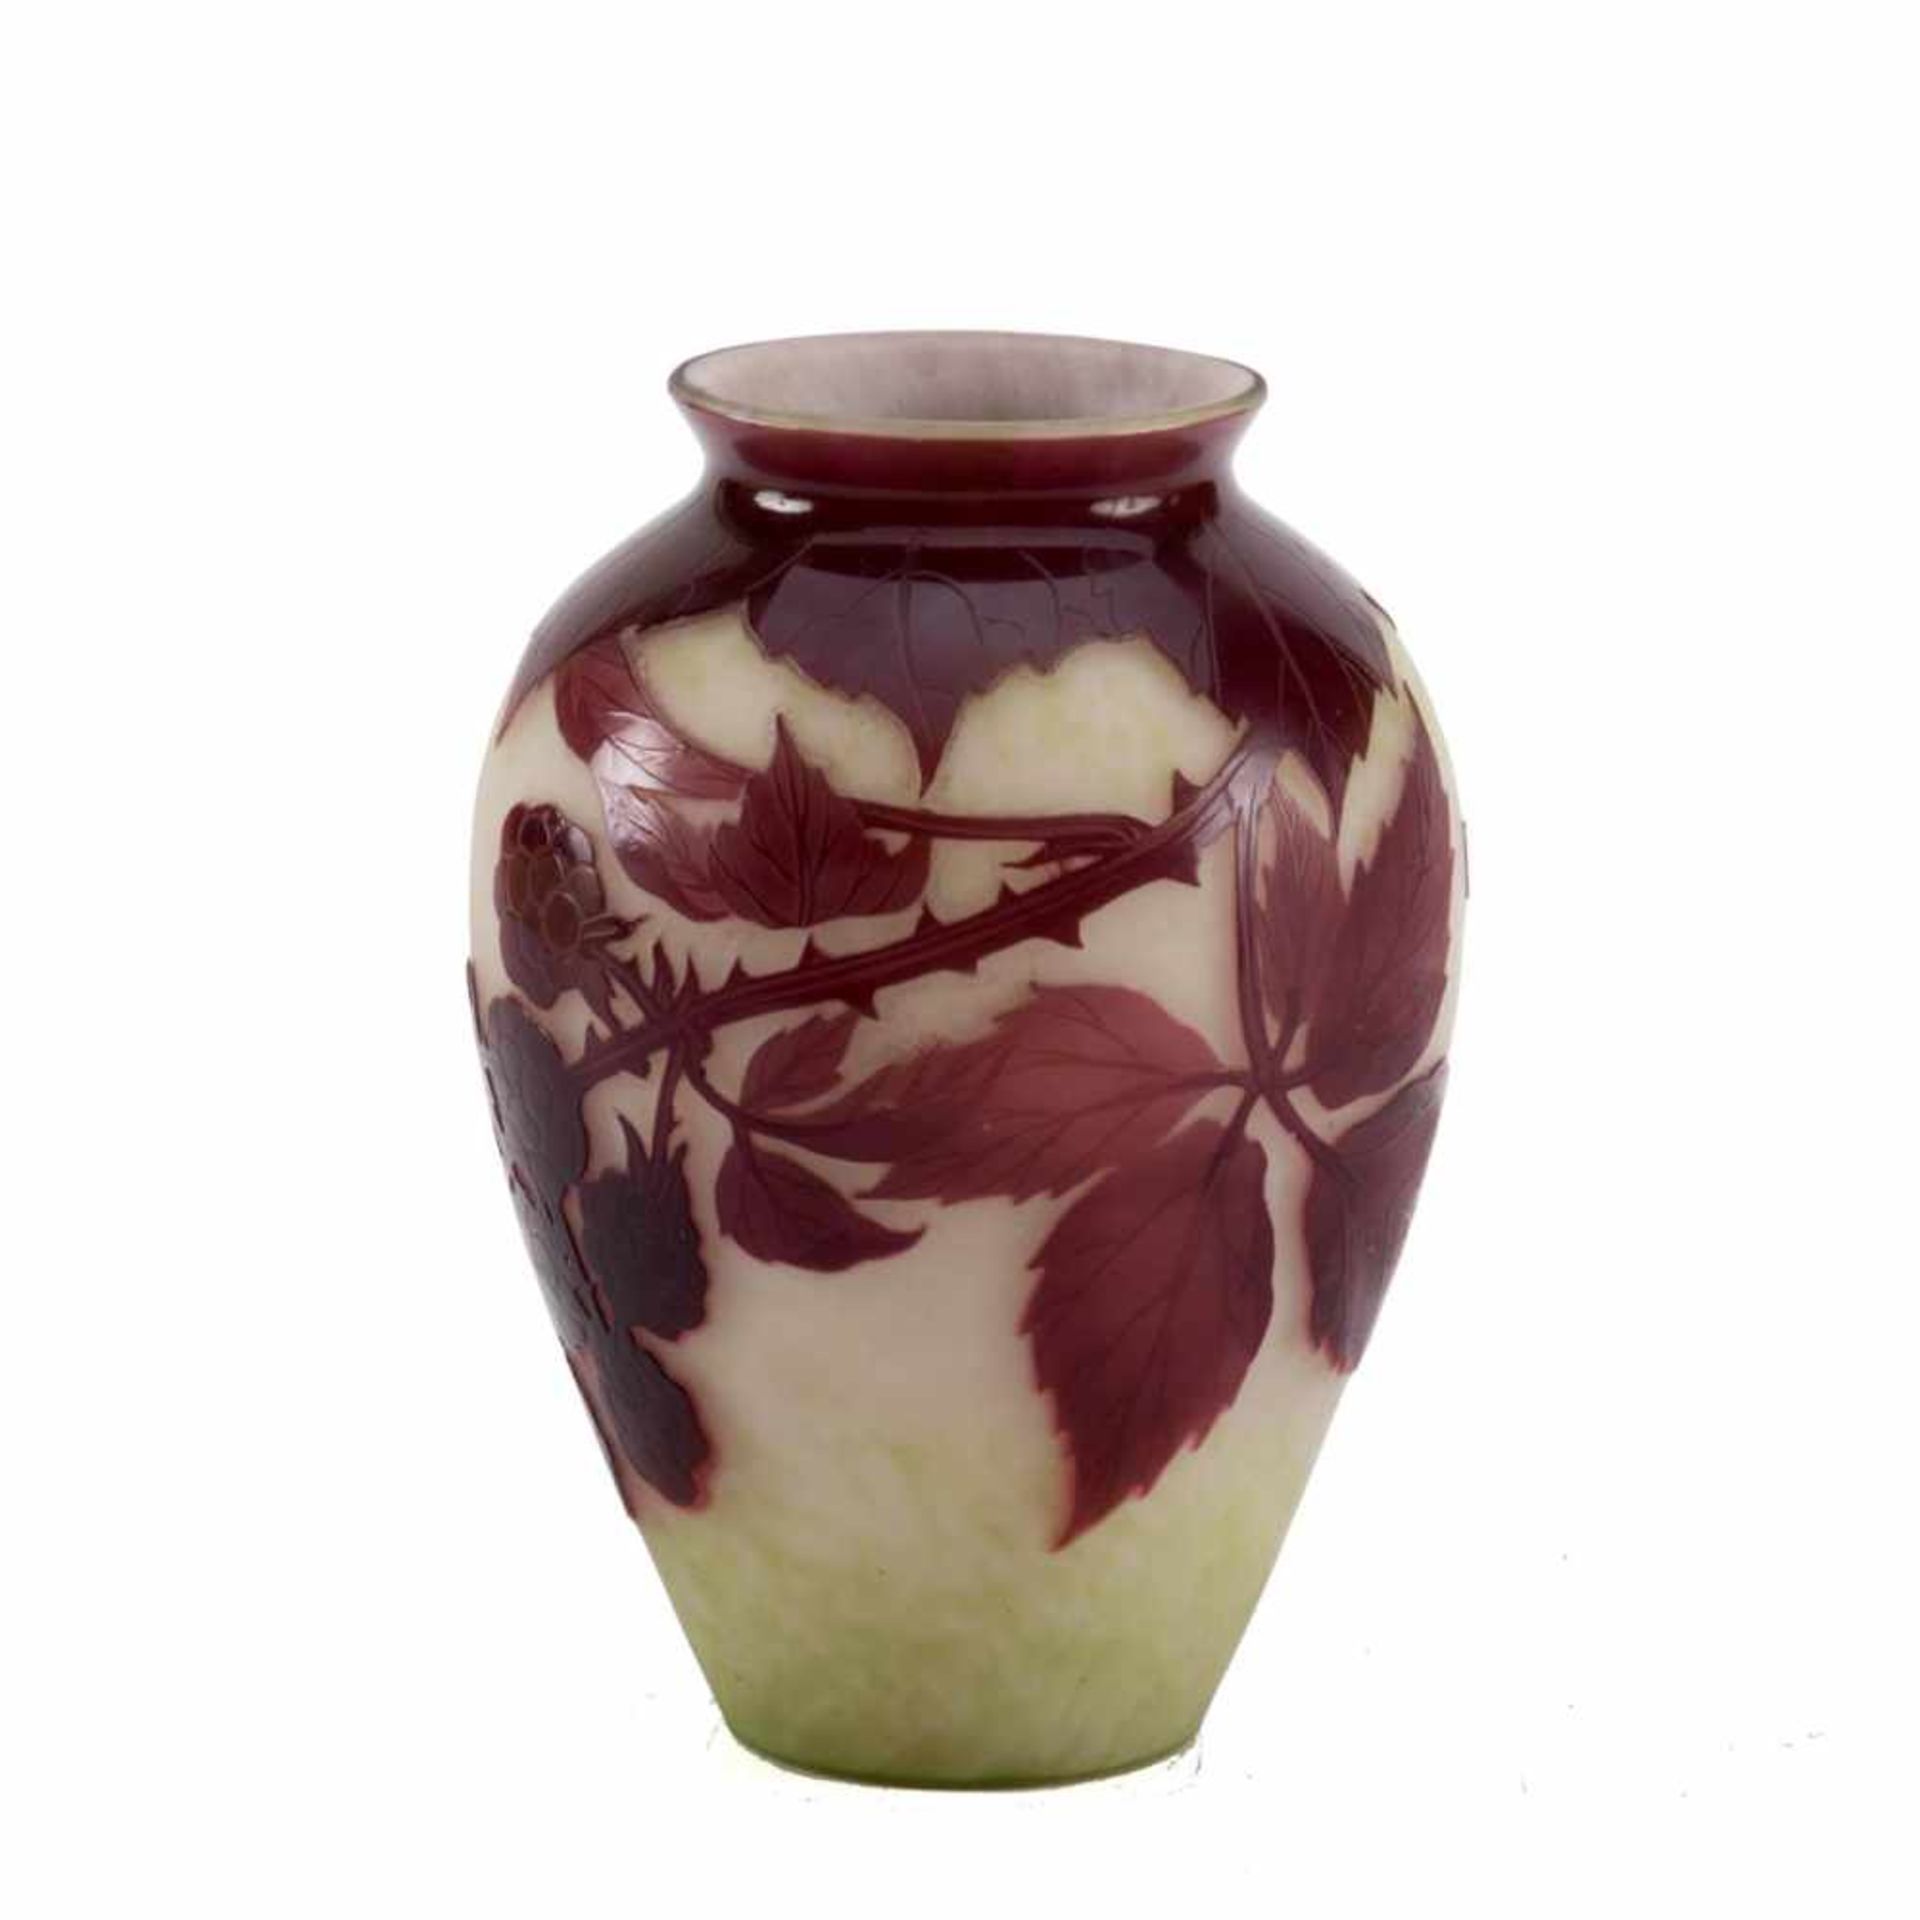 Delatte, Nancy, Vase um 1920 Ovoider Korpus. Farbloses Glas mit hellgrün bis weißlich verlaufender